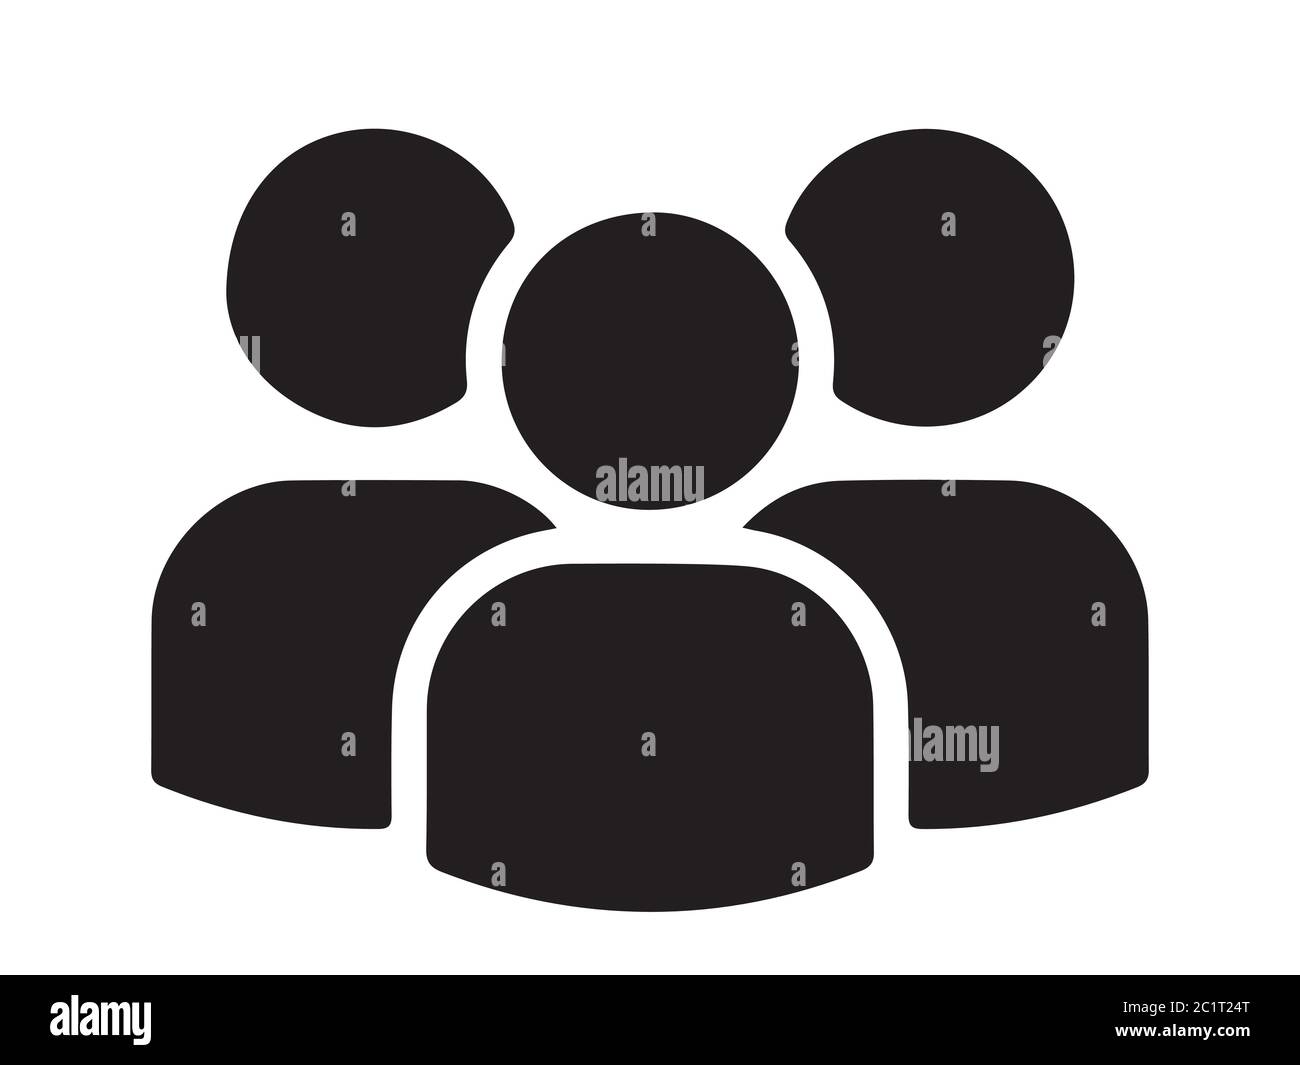 Icona multiutente. Tre Stick Figure Gruppo persone Gruppo Gruppo Gruppo Gruppo uomini. Illustrazione nera isolata su sfondo bianco. Vettore EPS Illustrazione Vettoriale